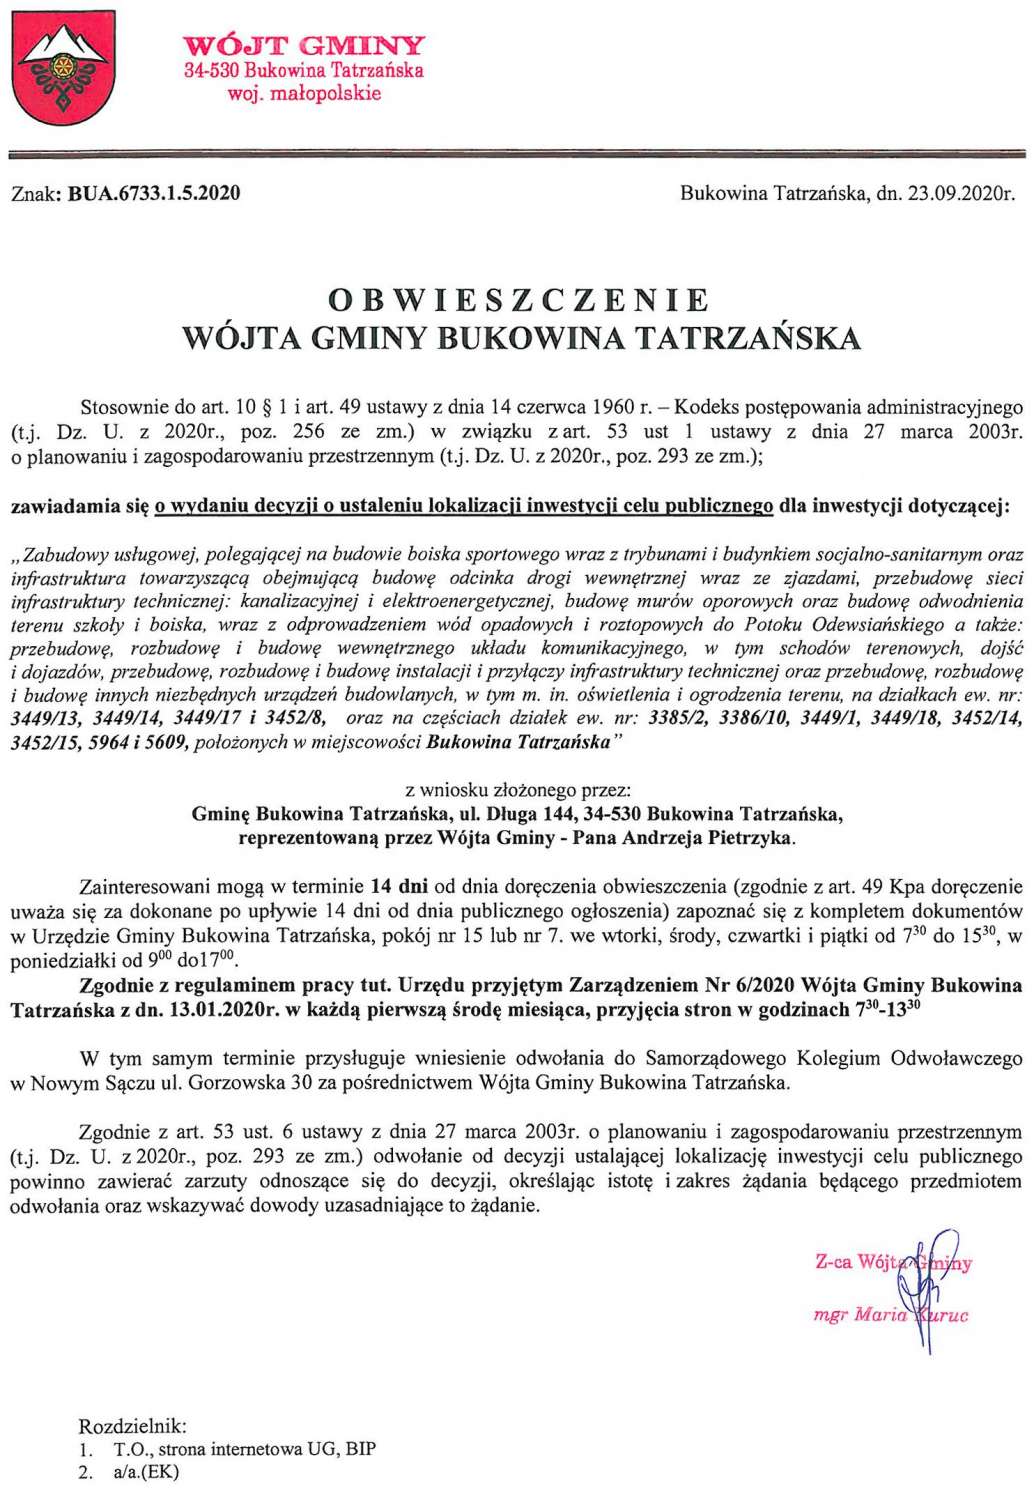 Obwieszczenie Wójta Gminy Bukowina Tatrzańska BUA 6733.1.5.2020